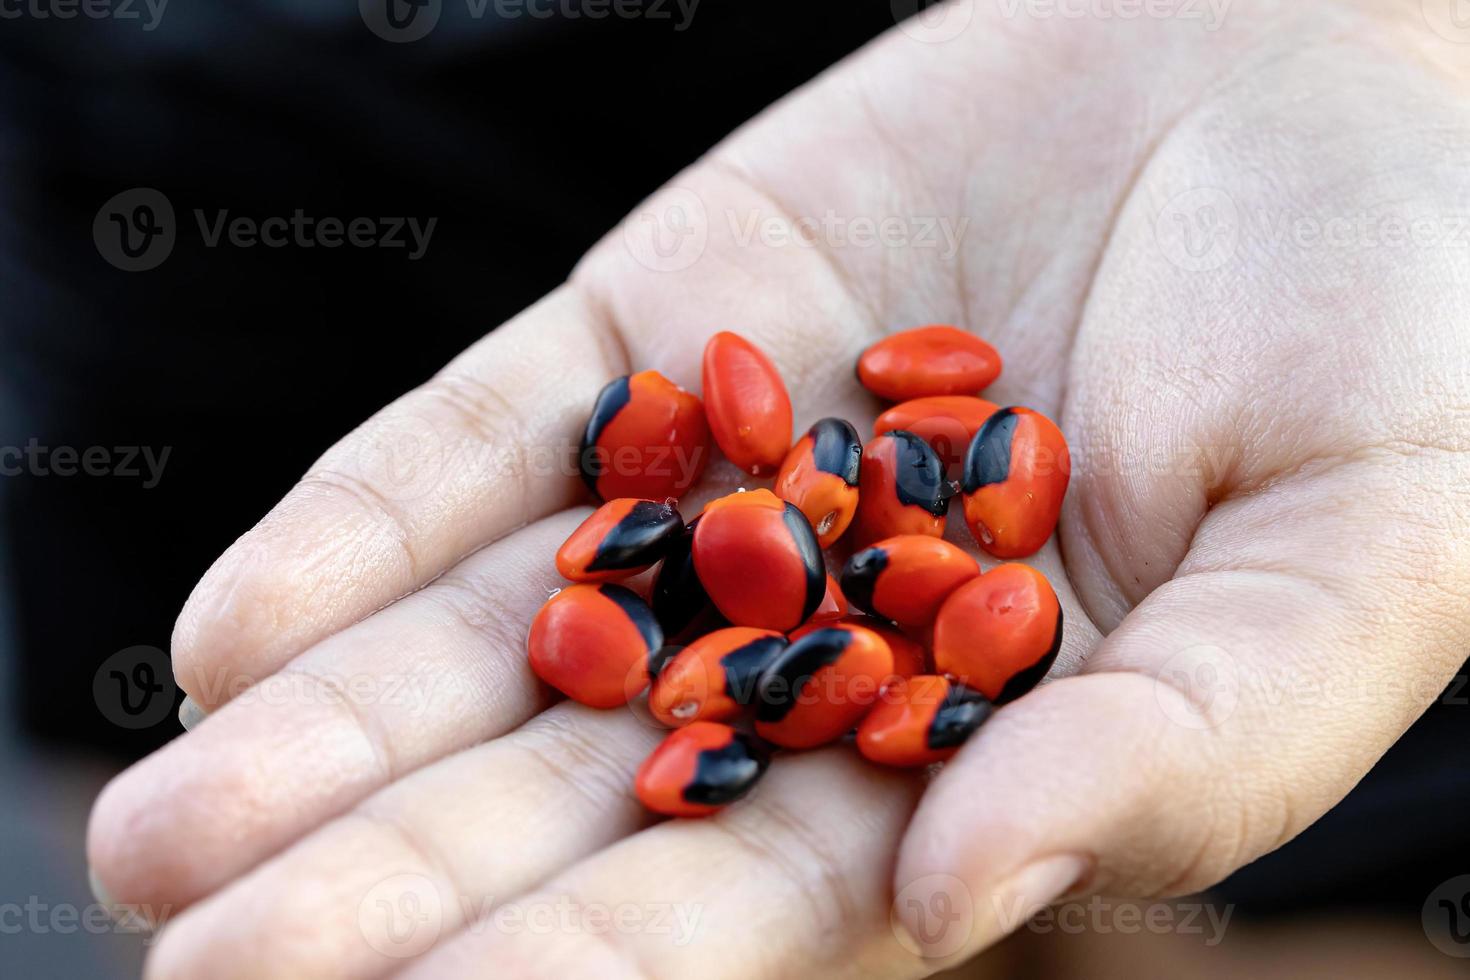 semillas rojas de ormosia foto